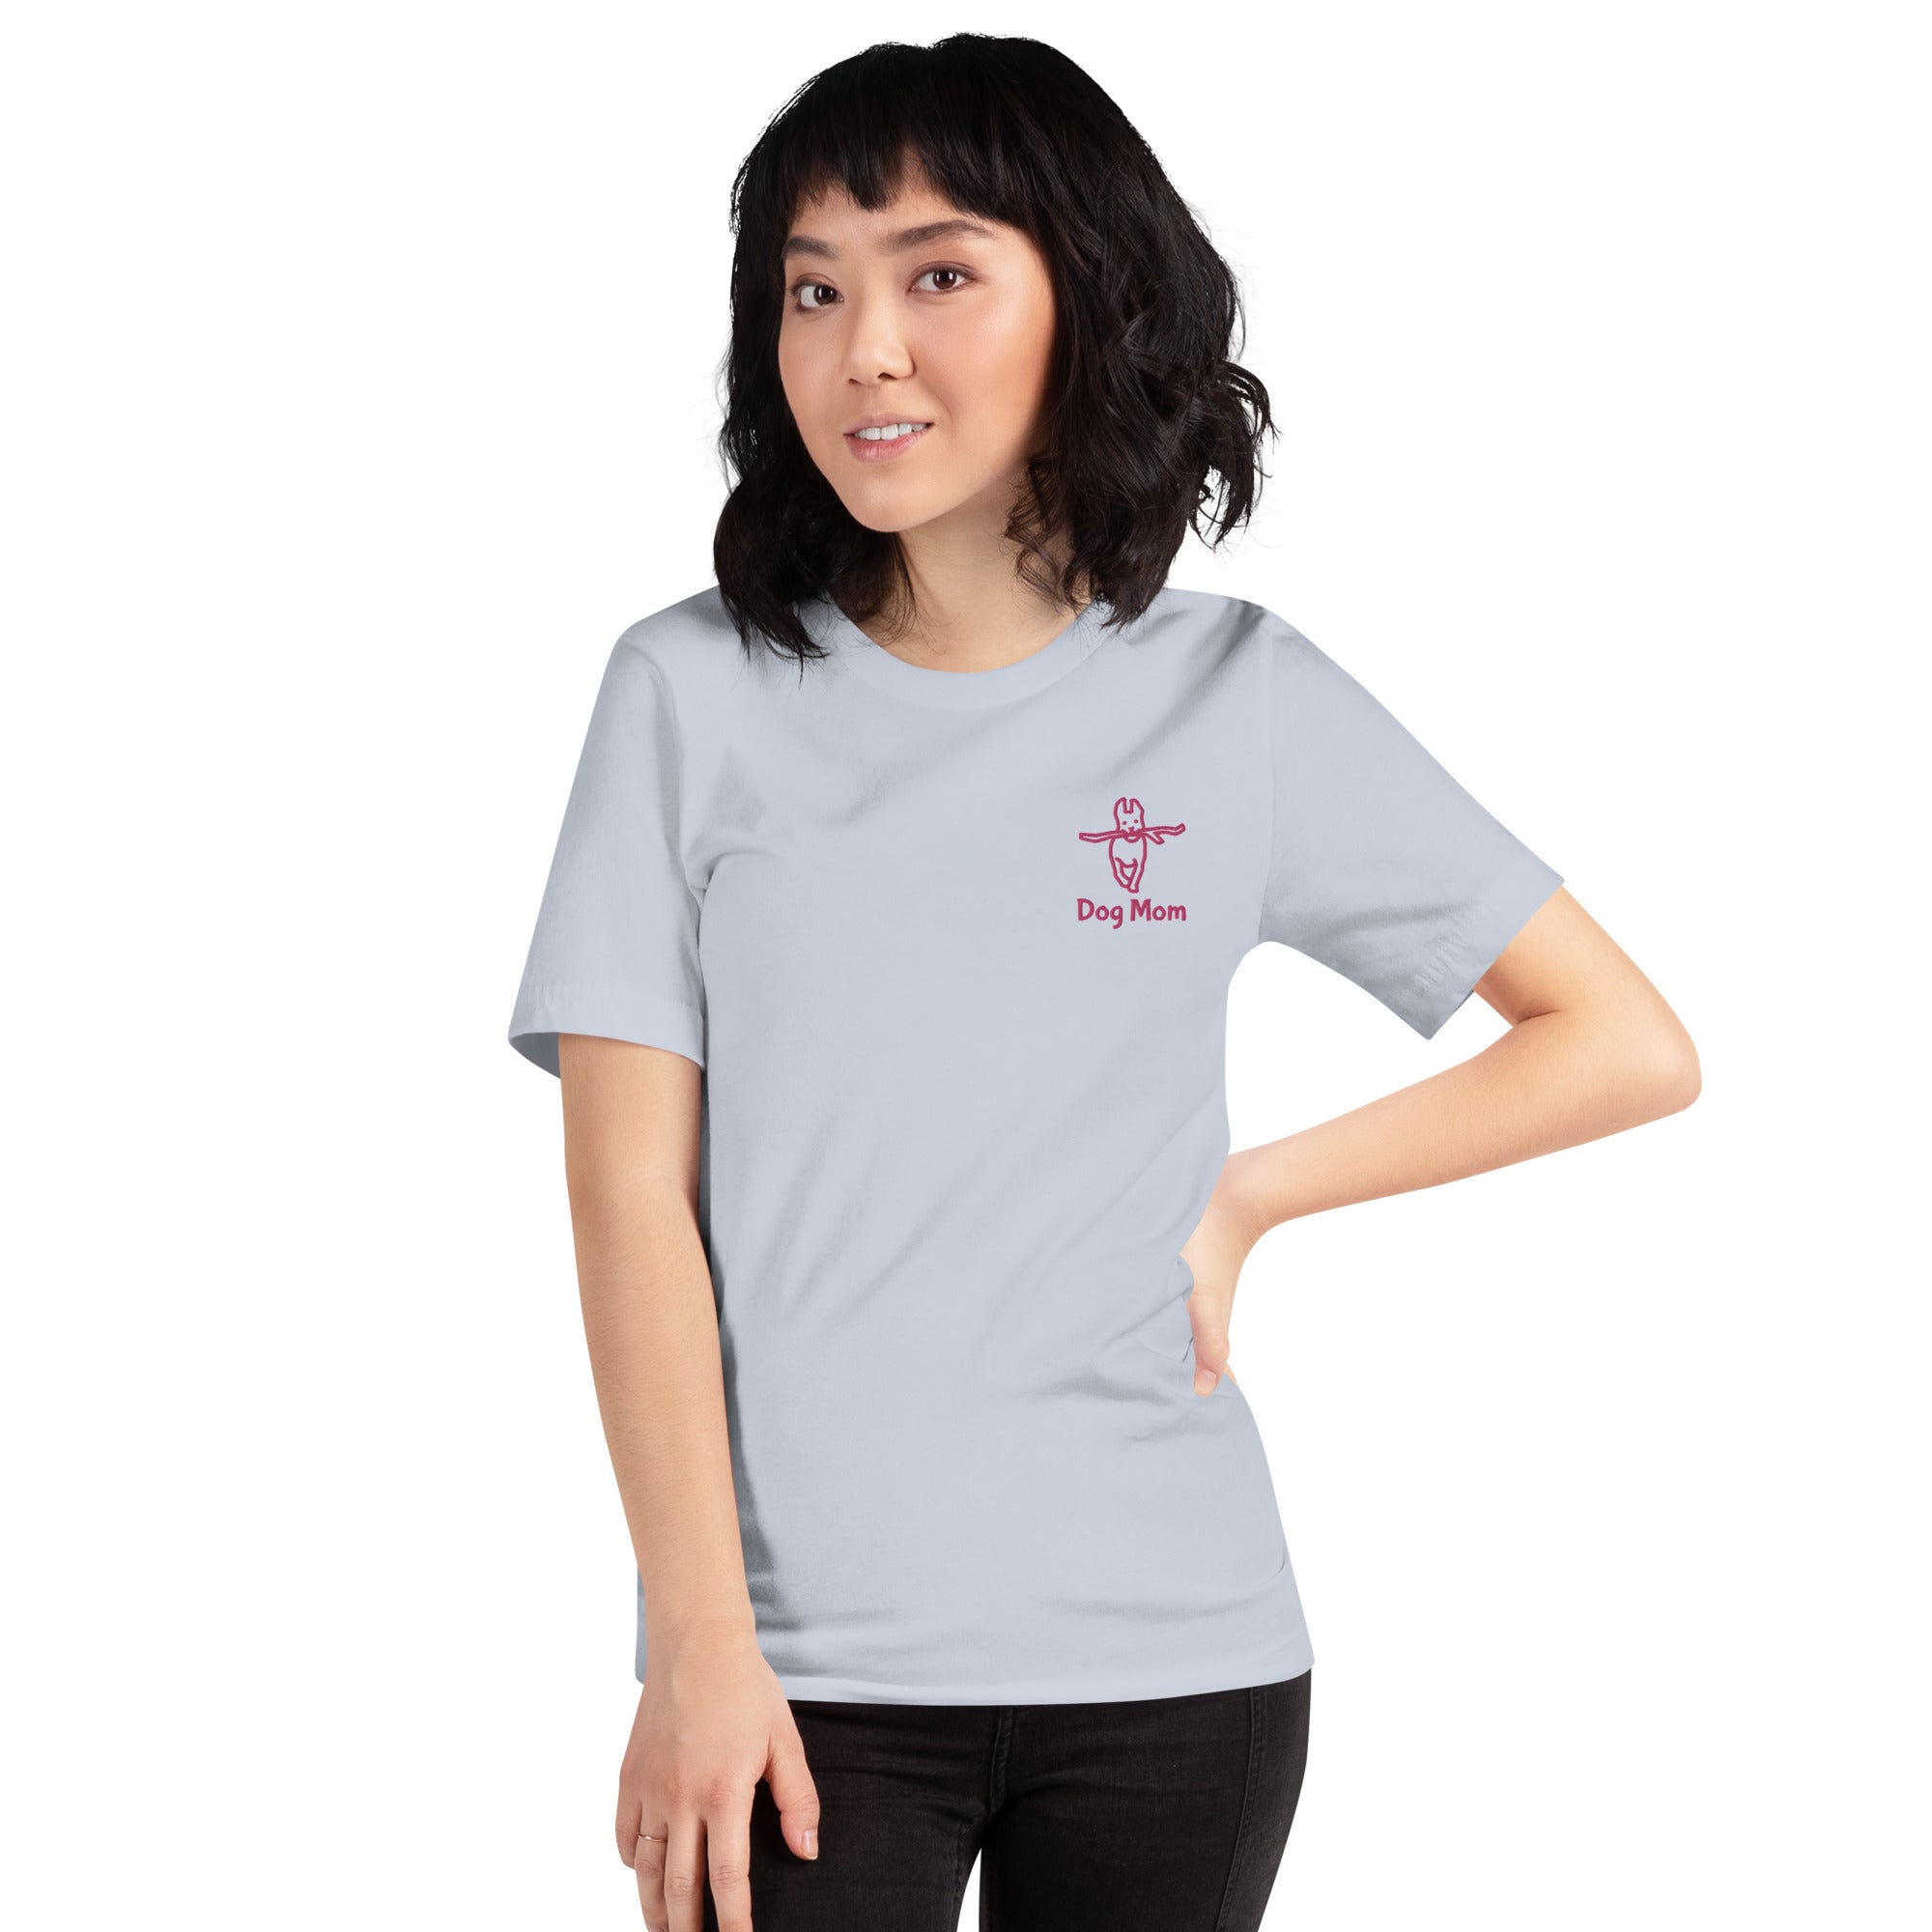 "Dog Mom" Short-sleeve unisex t-shirt